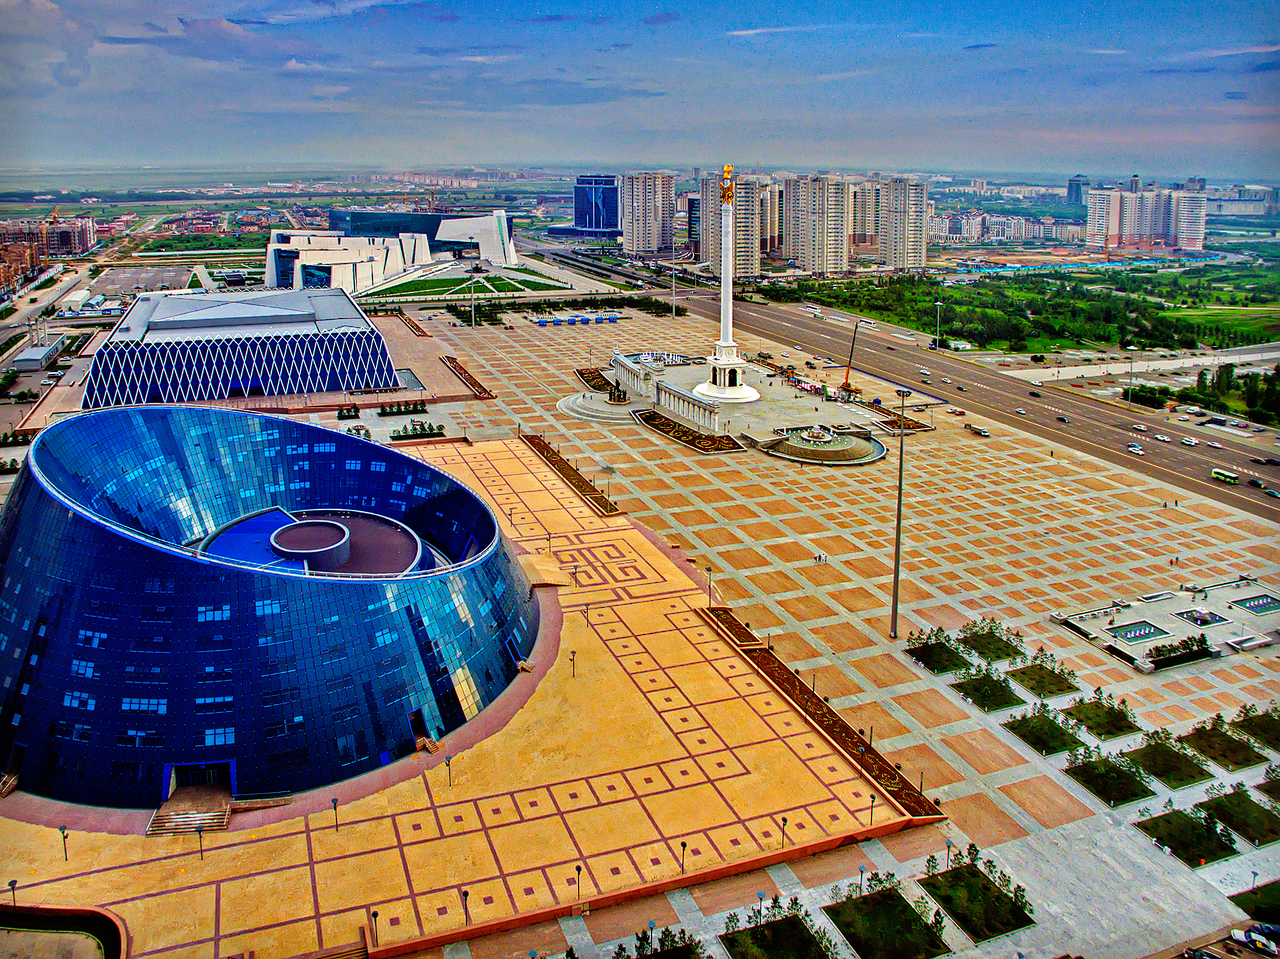 Astana 2020